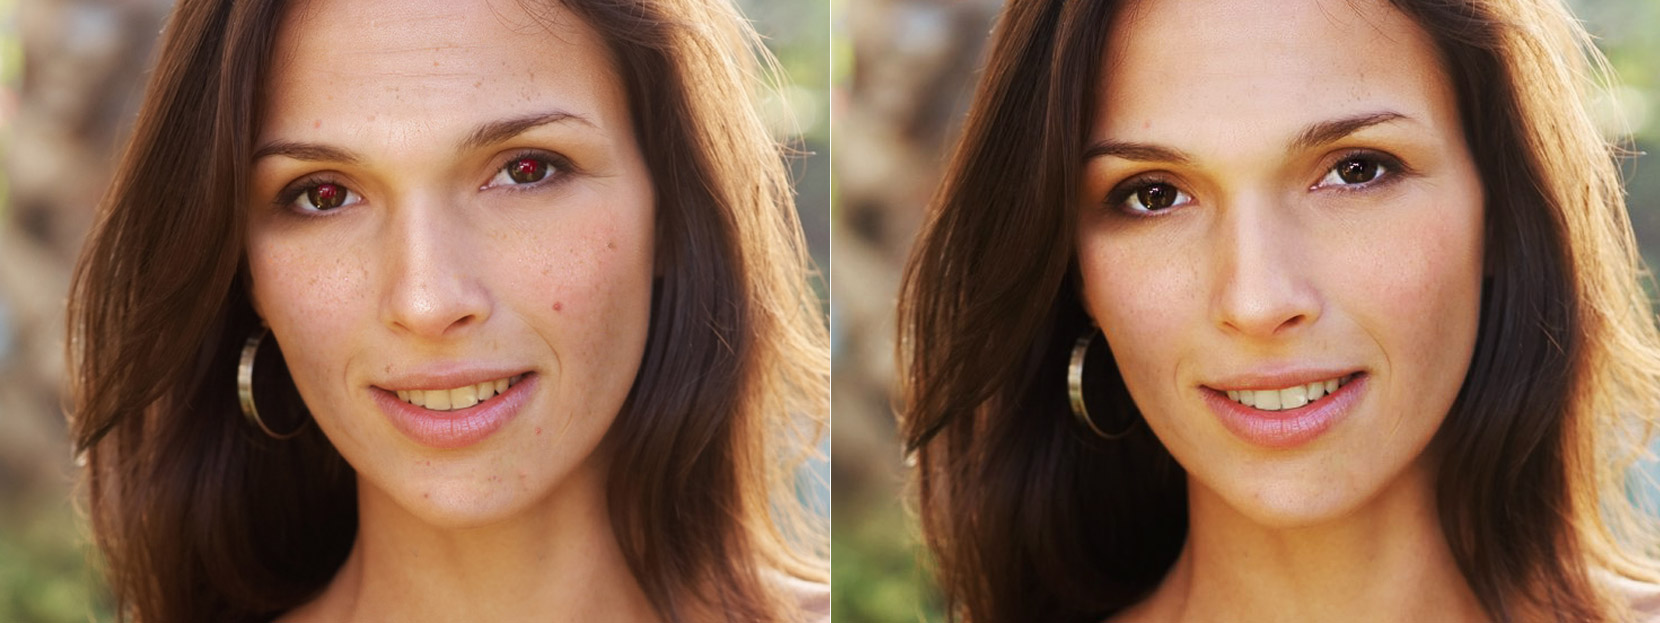 Retoque facial Antes y Después de usar Makeup.Pho.to